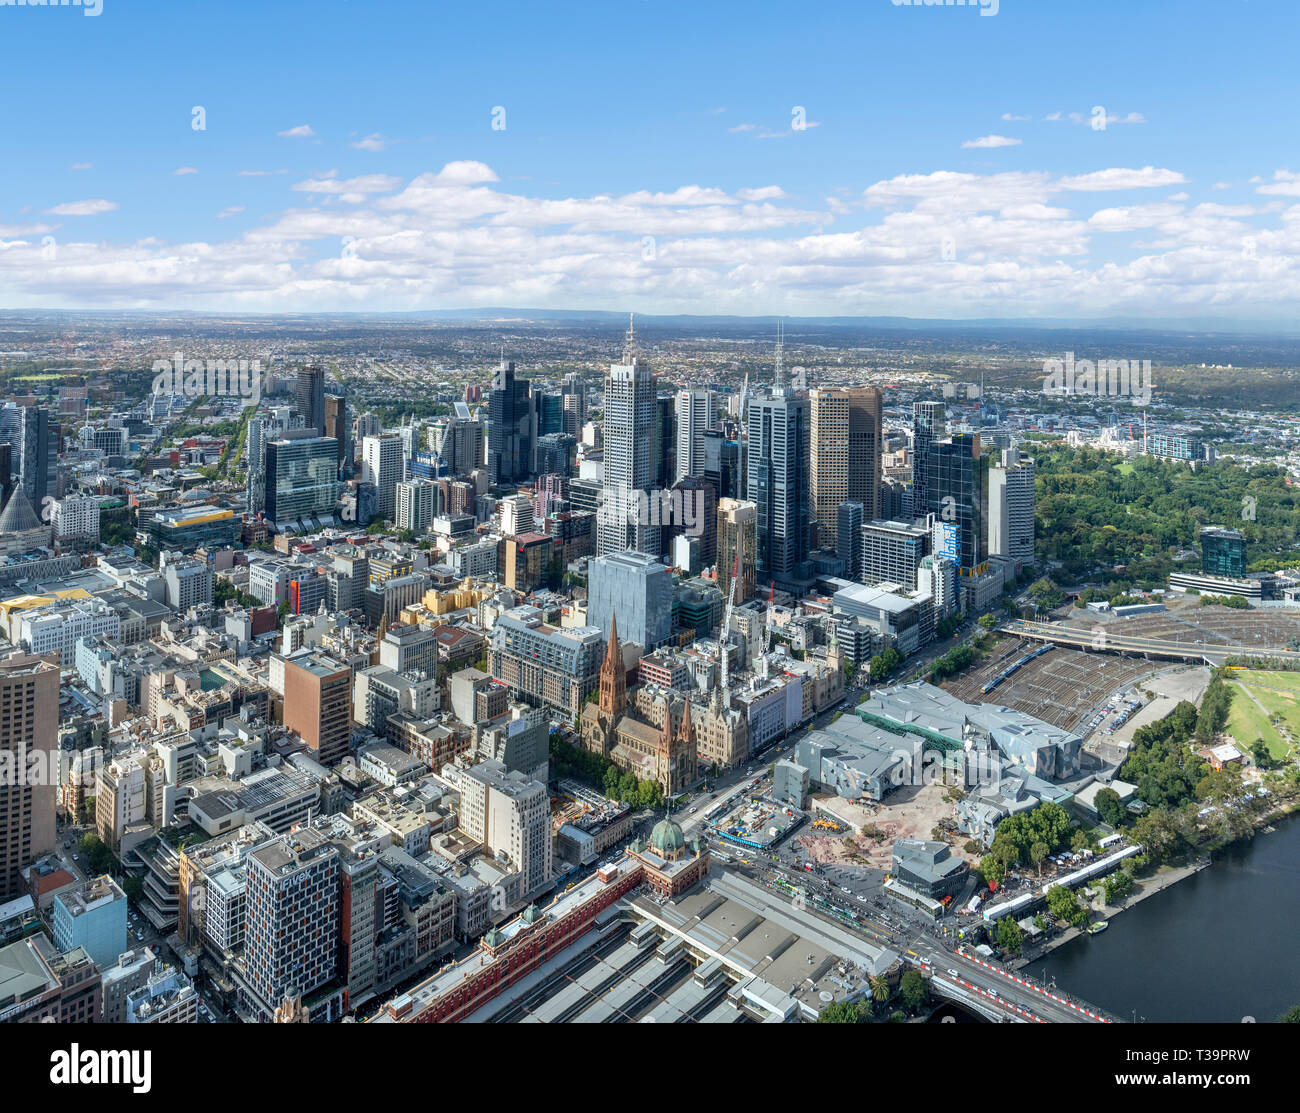 Paysage urbain de Melbourne. Vue aérienne de la gare de Flinders Street, Federation Square et Central Business District d'Eureka Tower, Melbourne, Australie Banque D'Images